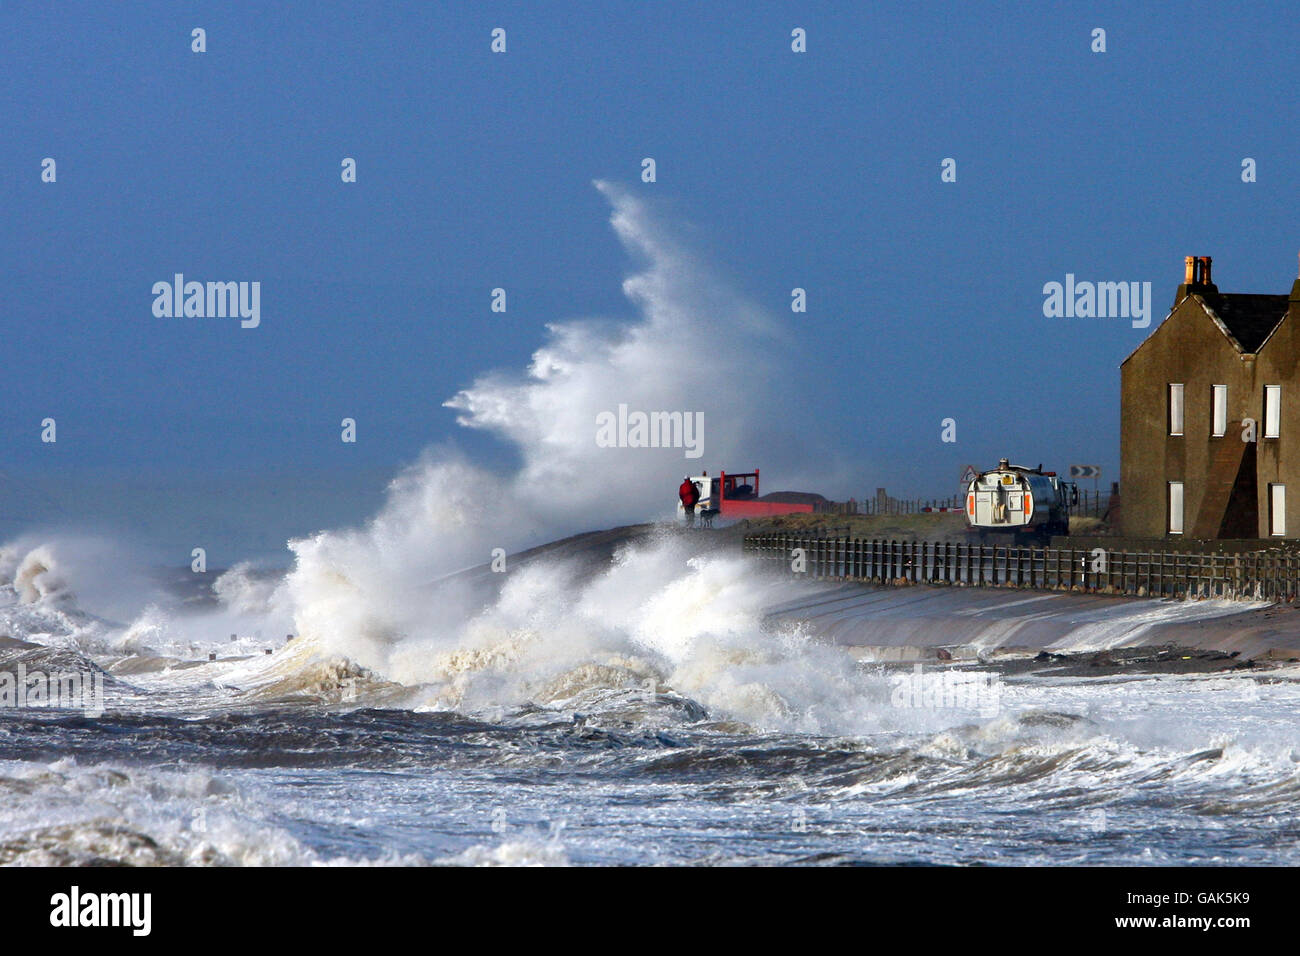 Eine Welle bricht über die A956 zwischen Allonby und Silloth in Cumbria, wenn das schlechte Wetter anhält. Stockfoto